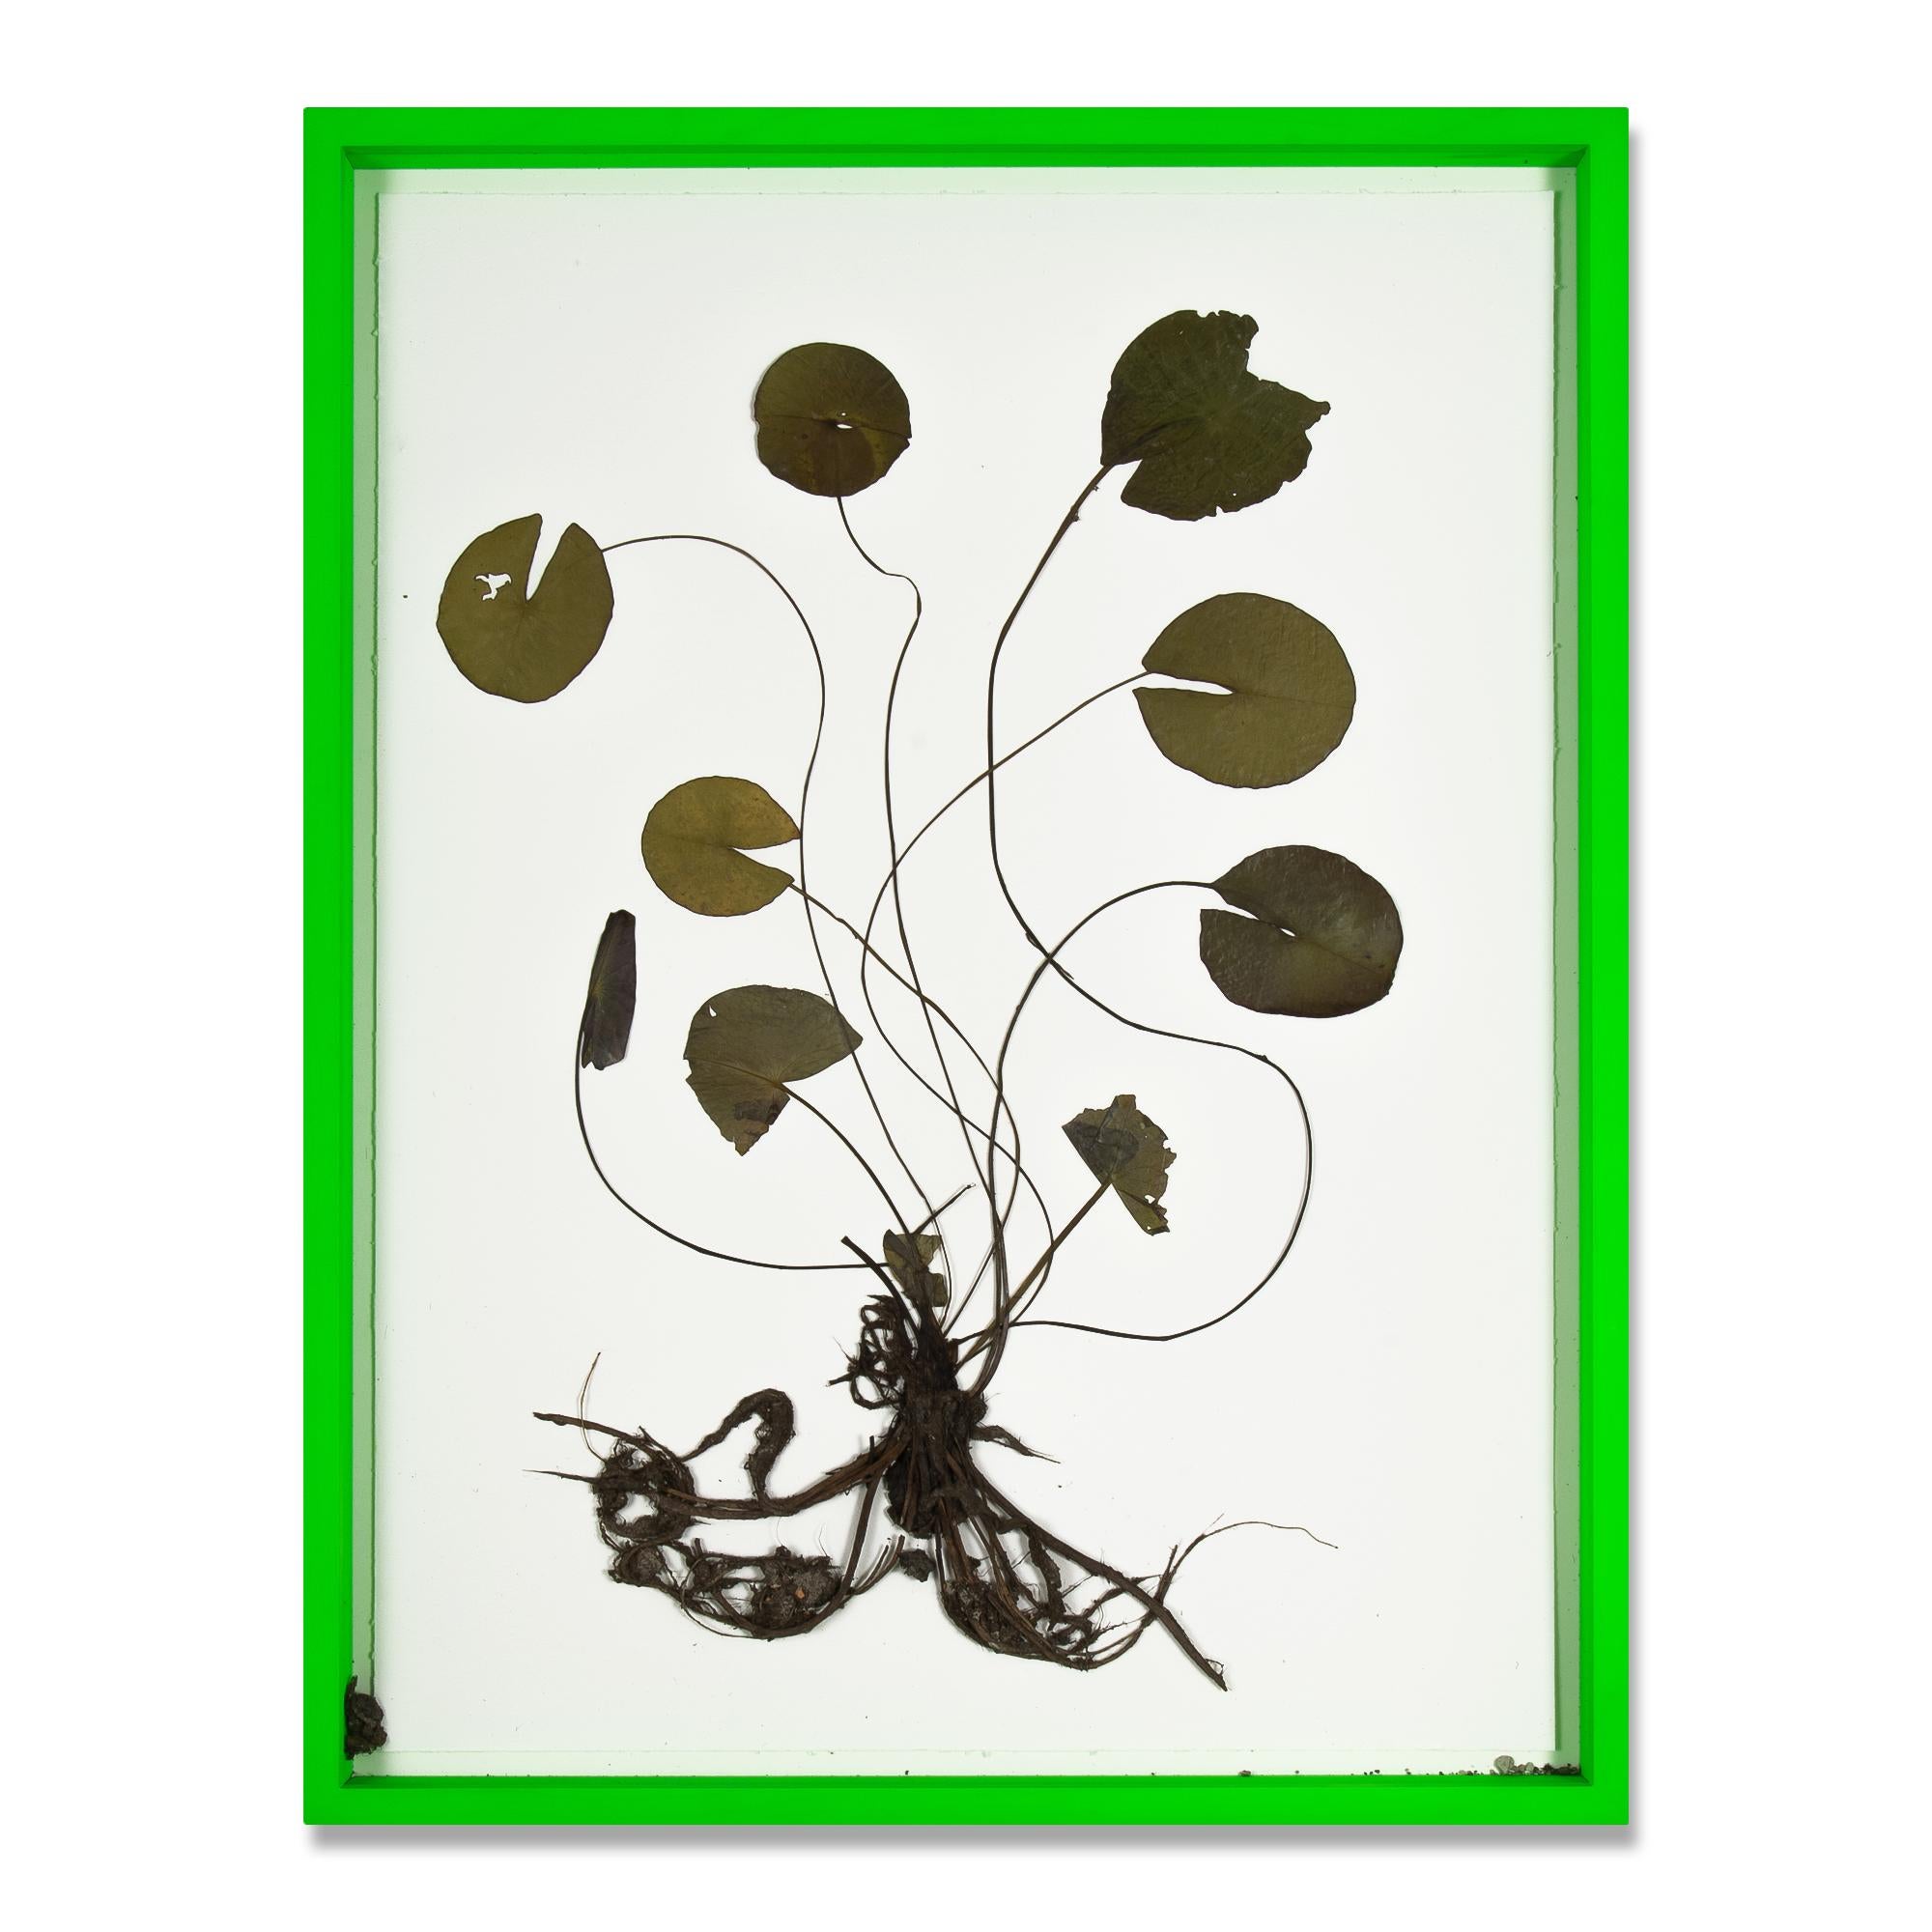 Olafur Eliasson, Herbarium - Collage de lys d'eau séchée, art contemporain